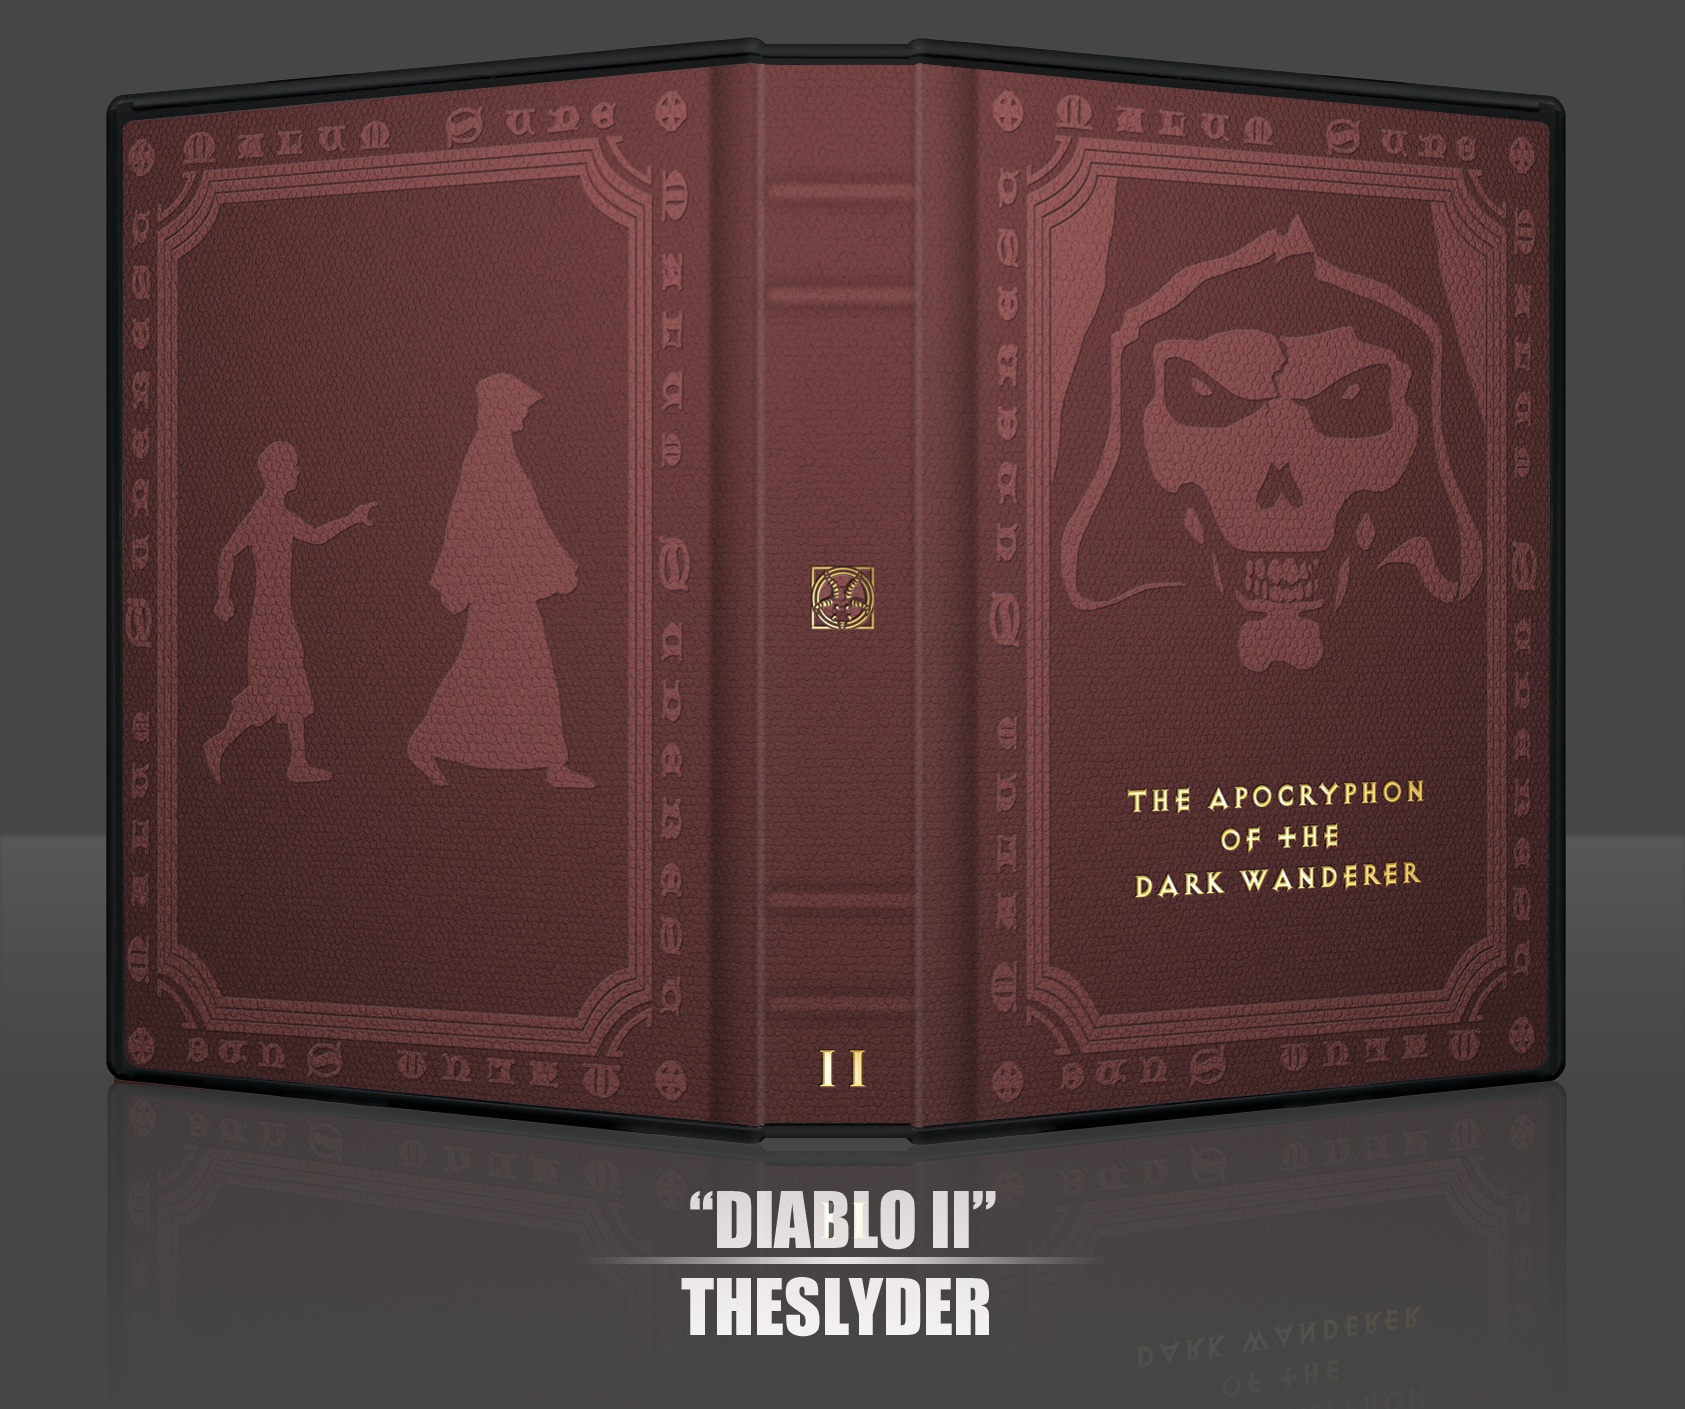 Diablo II box cover